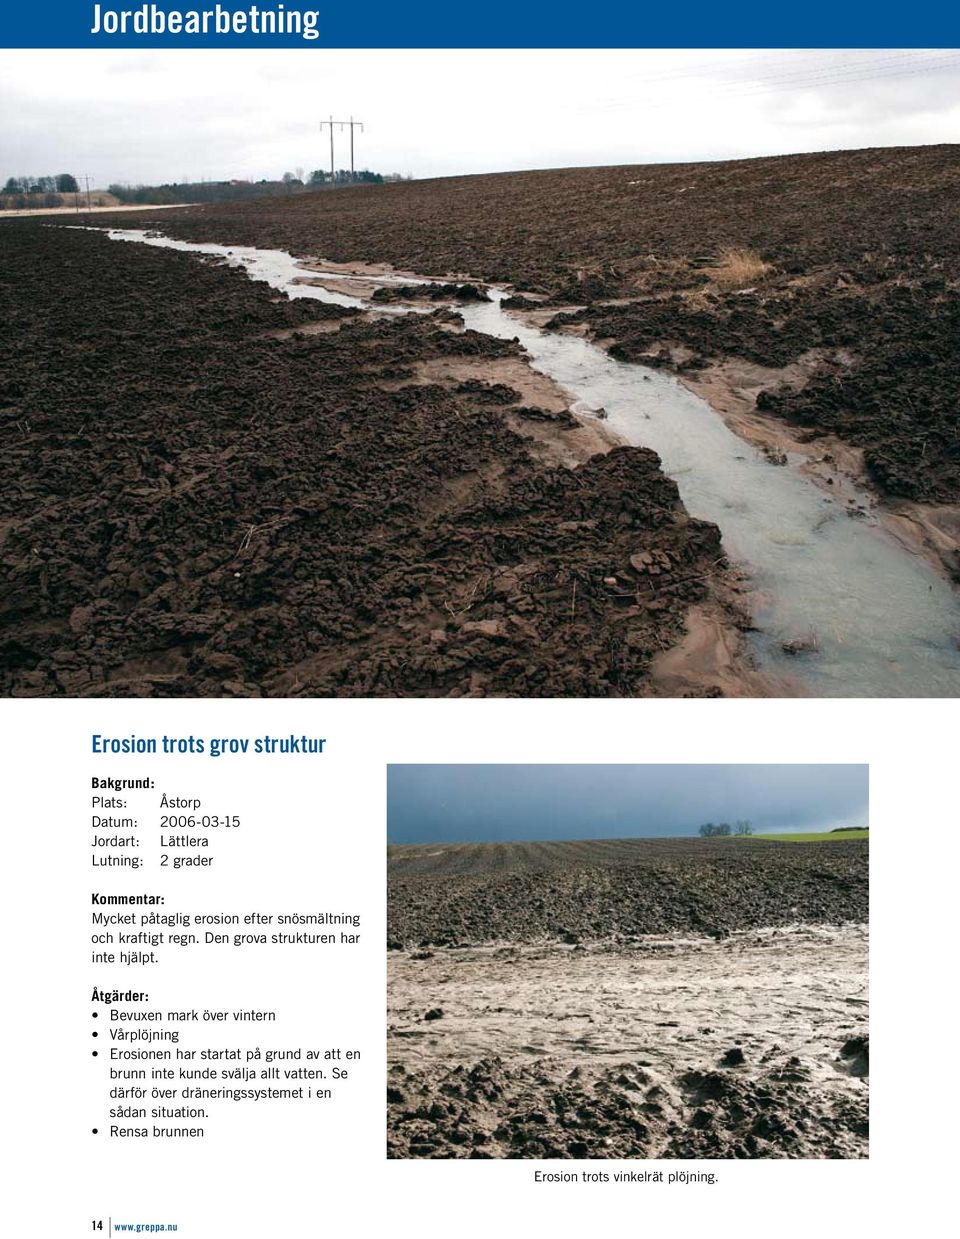 Åtgärder: Bevuxen mark över vintern Vårplöjning Erosionen har startat på grund av att en brunn inte kunde svälja allt